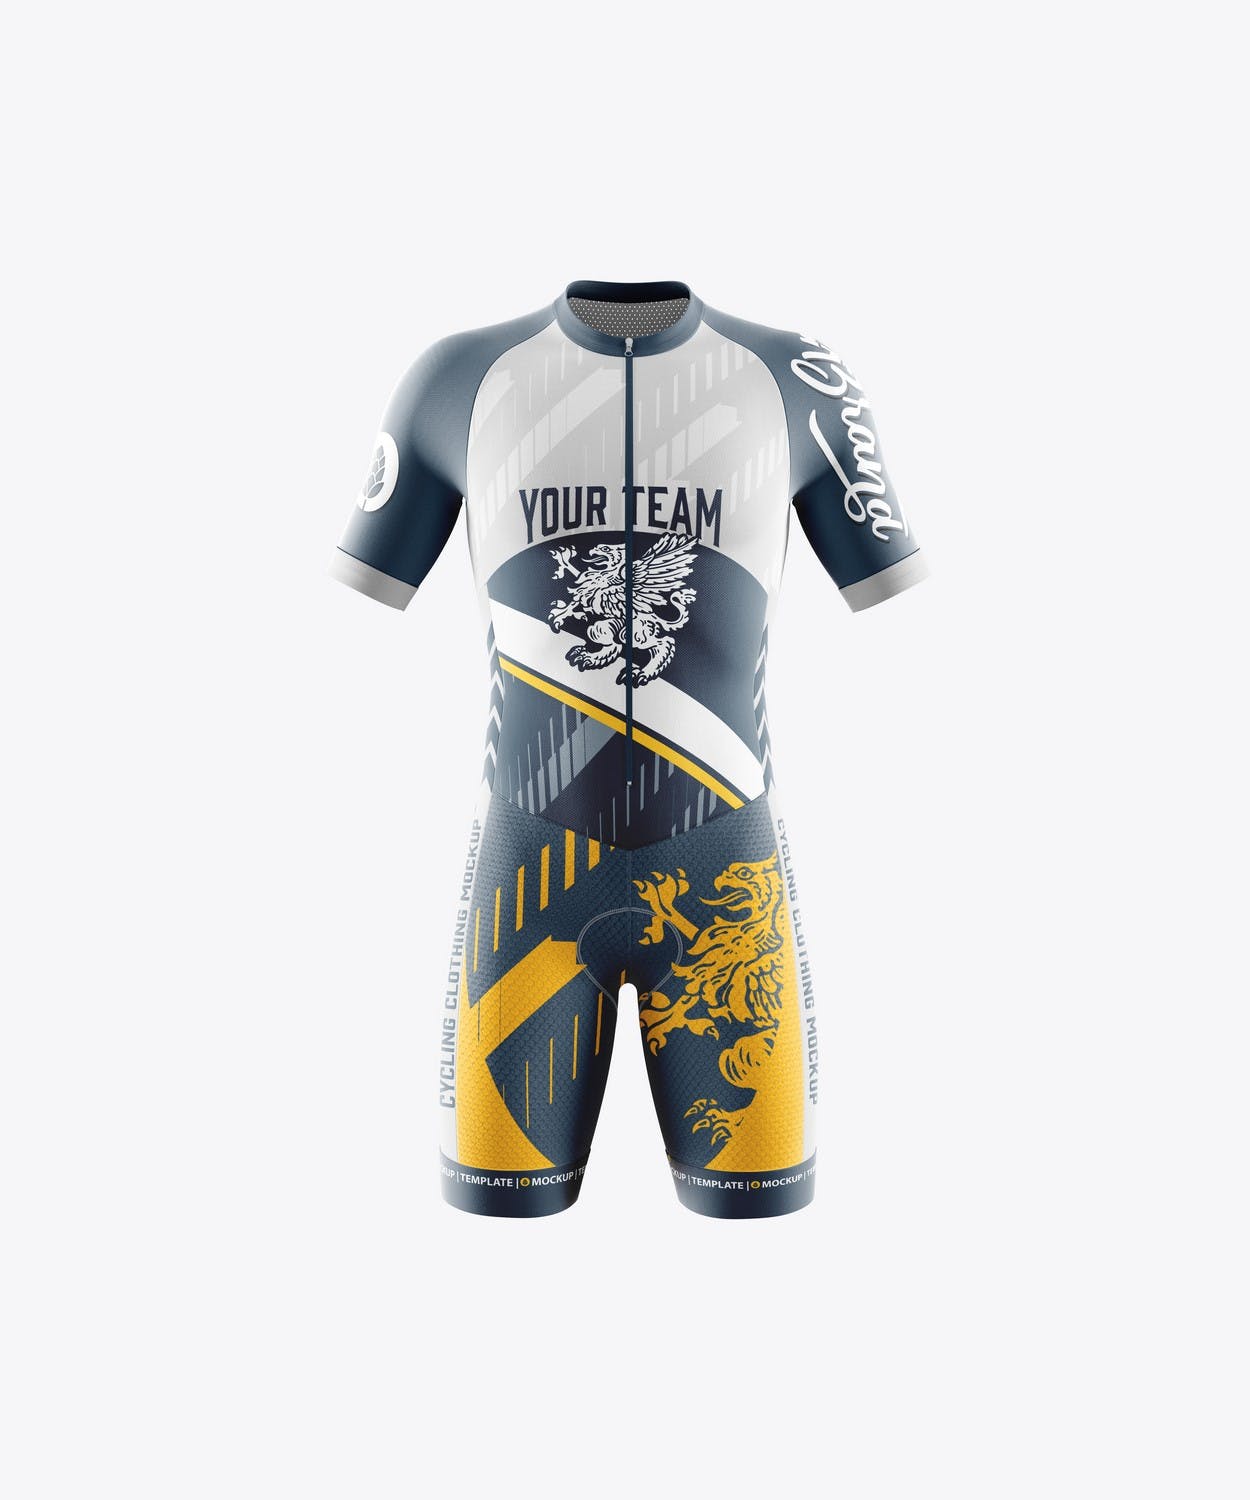 男子运动套装自行车服装品牌设计样机 Sport Cycling Suit for Men Mockup 样机素材 第11张